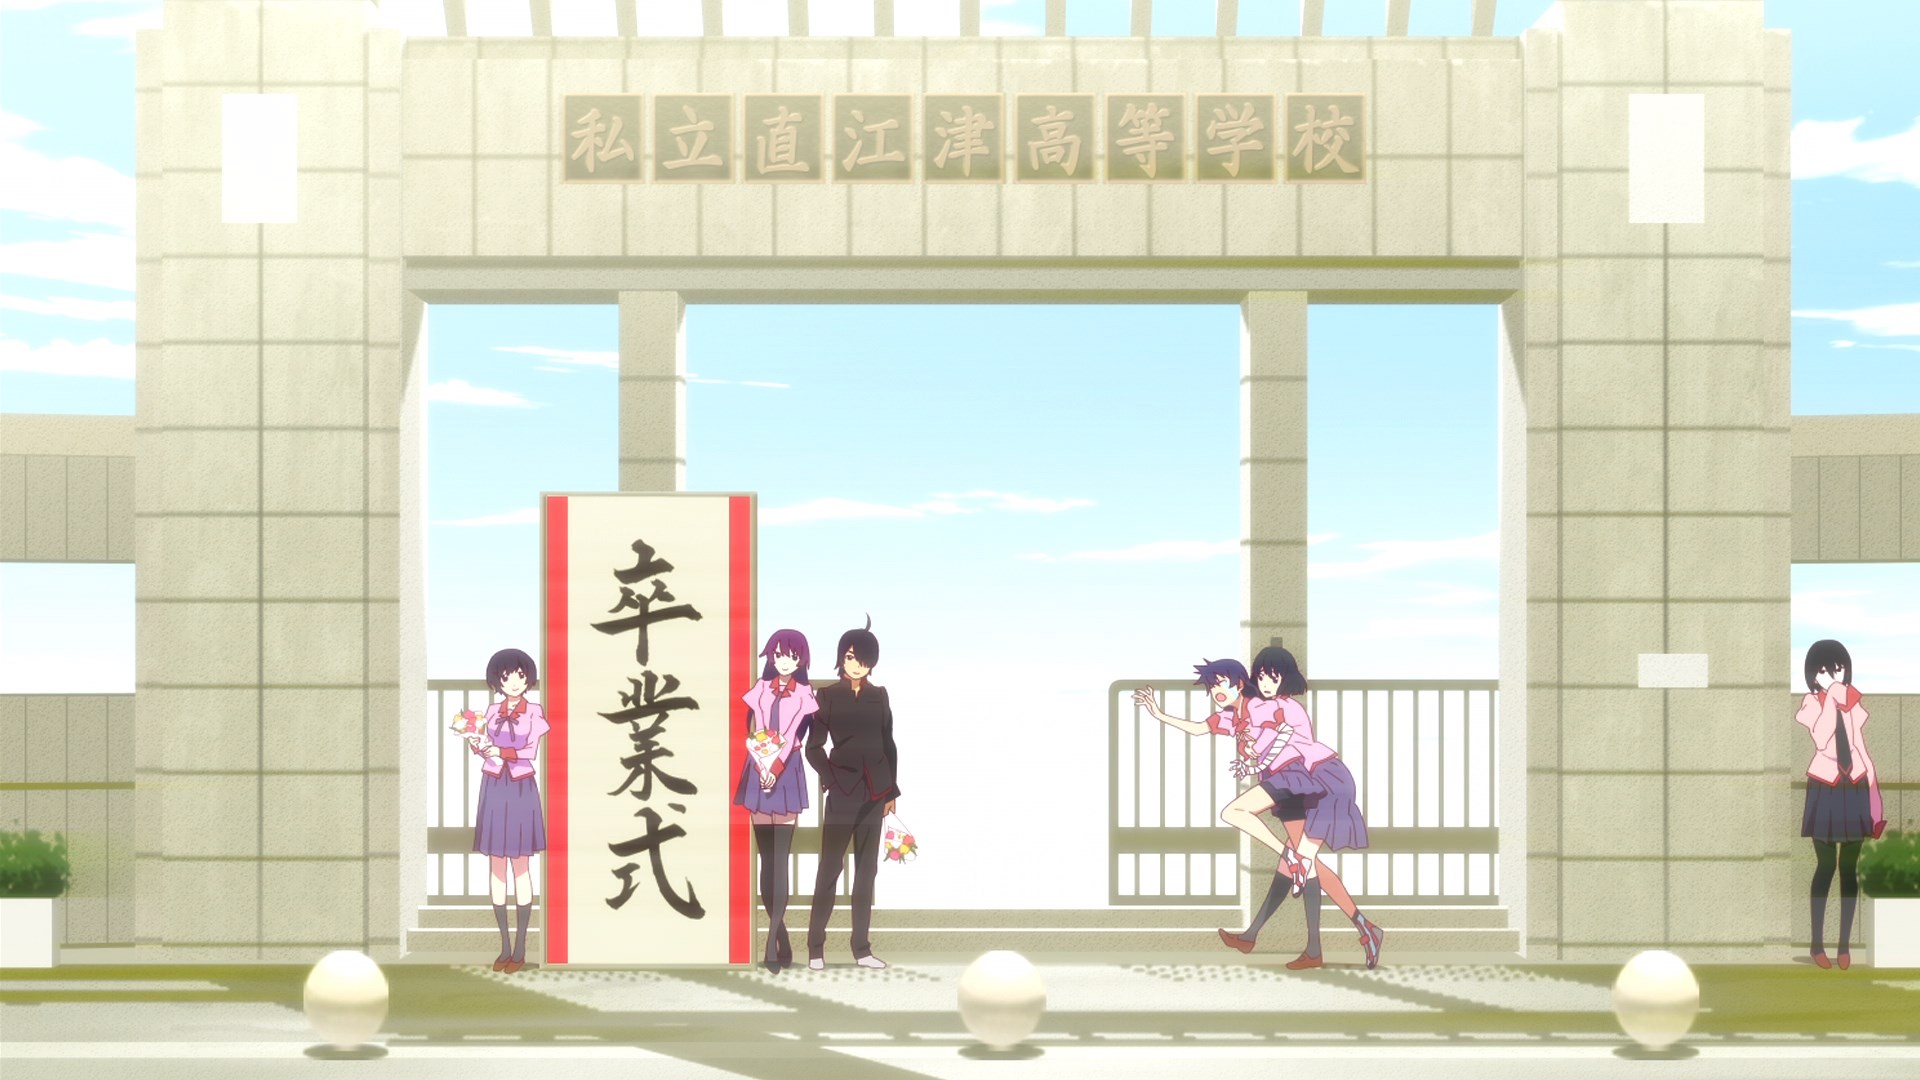 Free download wallpaper Anime, Monogatari (Series), Hitagi Senjōgahara, Suruga Kanbaru, Tsubasa Hanekawa, Koyomi Araragi, Ougi Oshino on your PC desktop